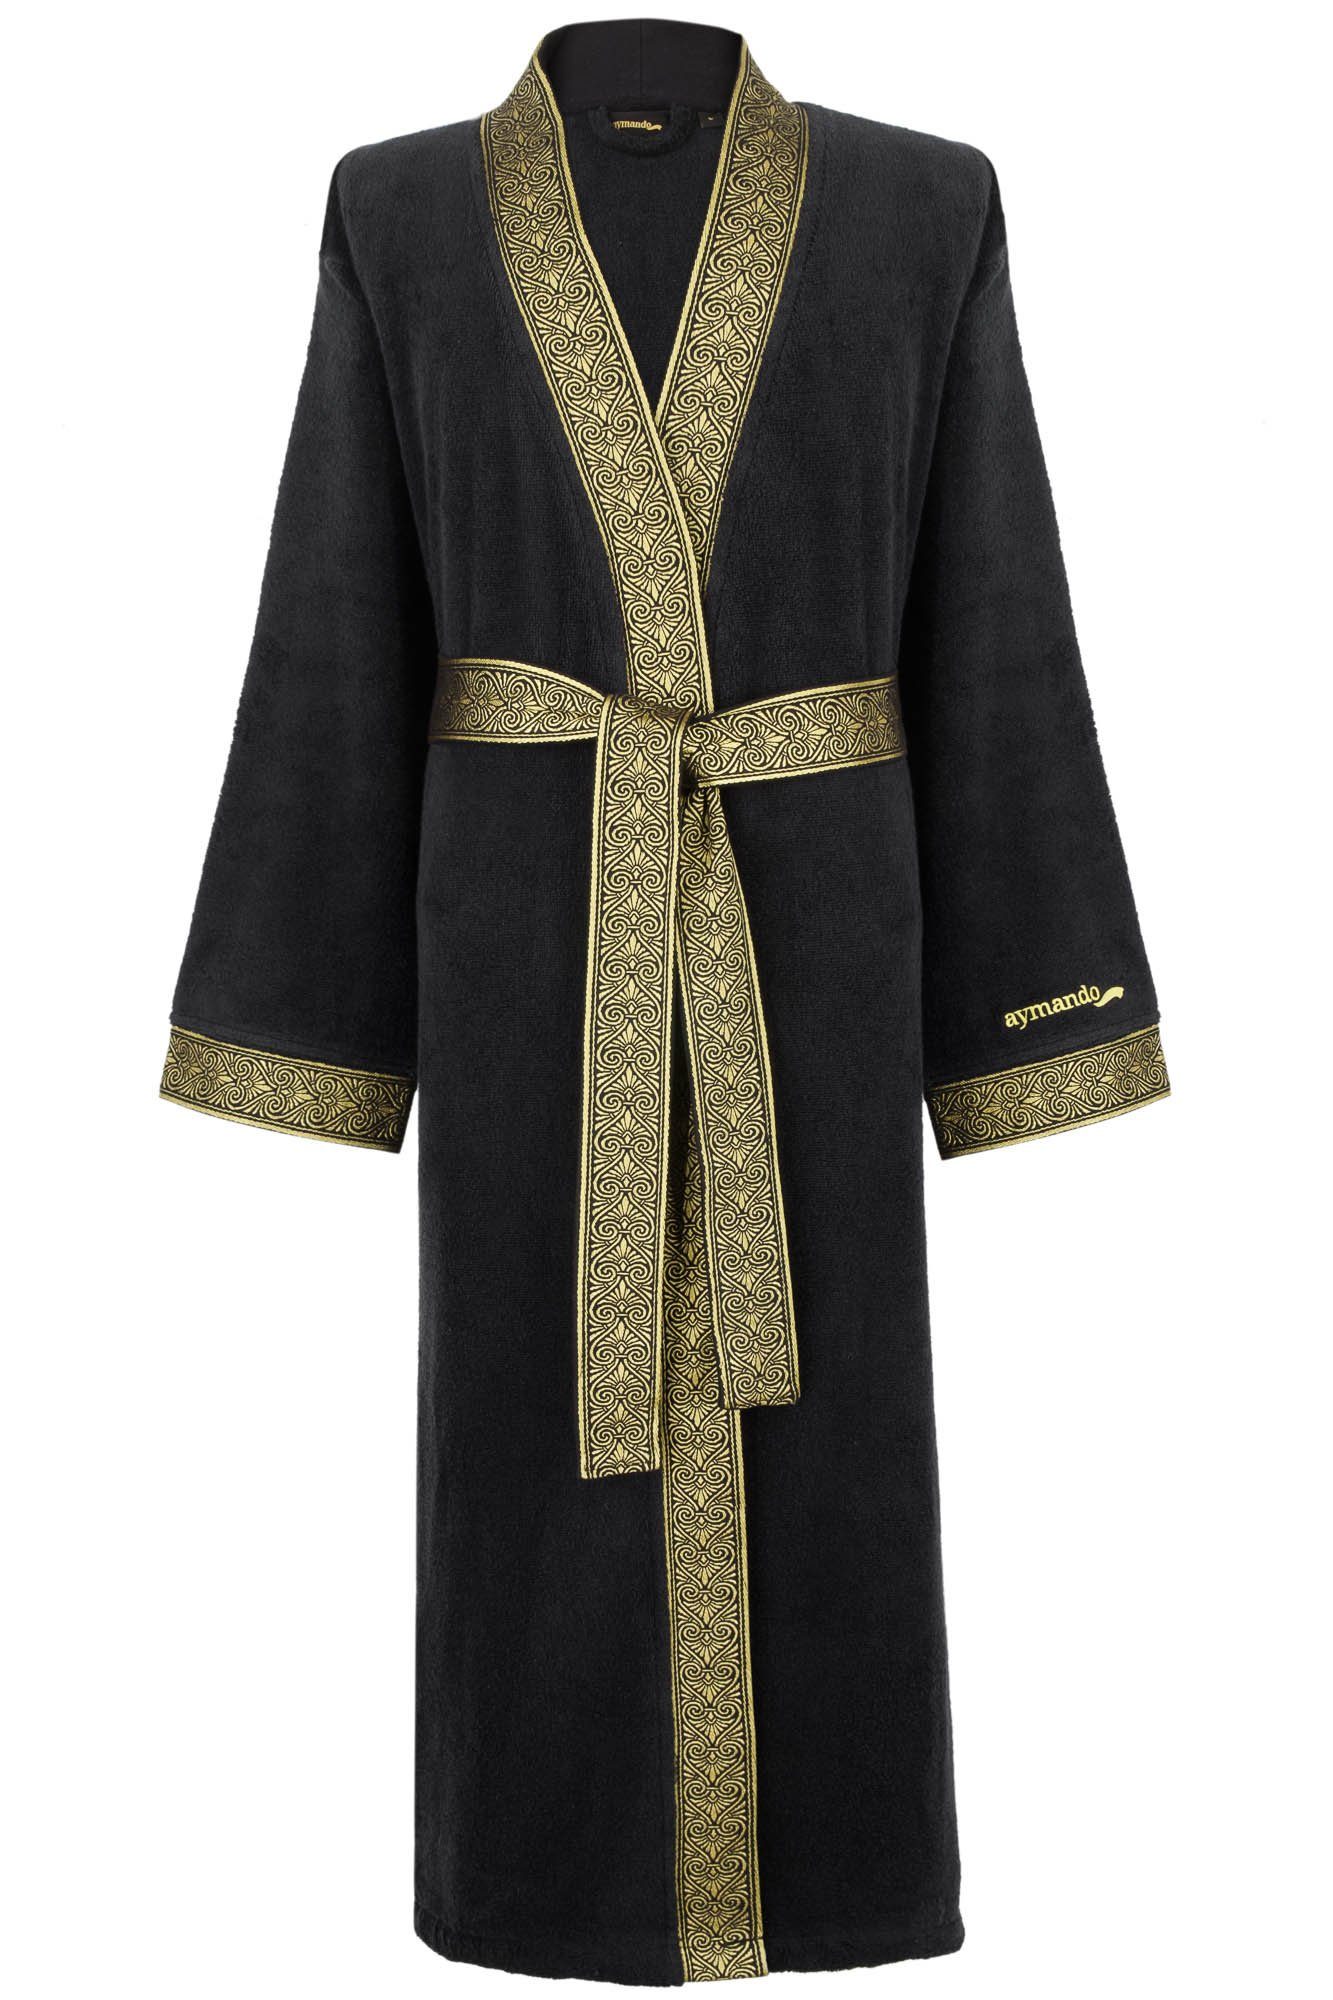 Aymando Bademantel Schwarz, 100% Baumwolle, Ornament Optik, gestickte Gold Bindegürtel, Blende Kimono-Kragen, Geschenkverpackung mit